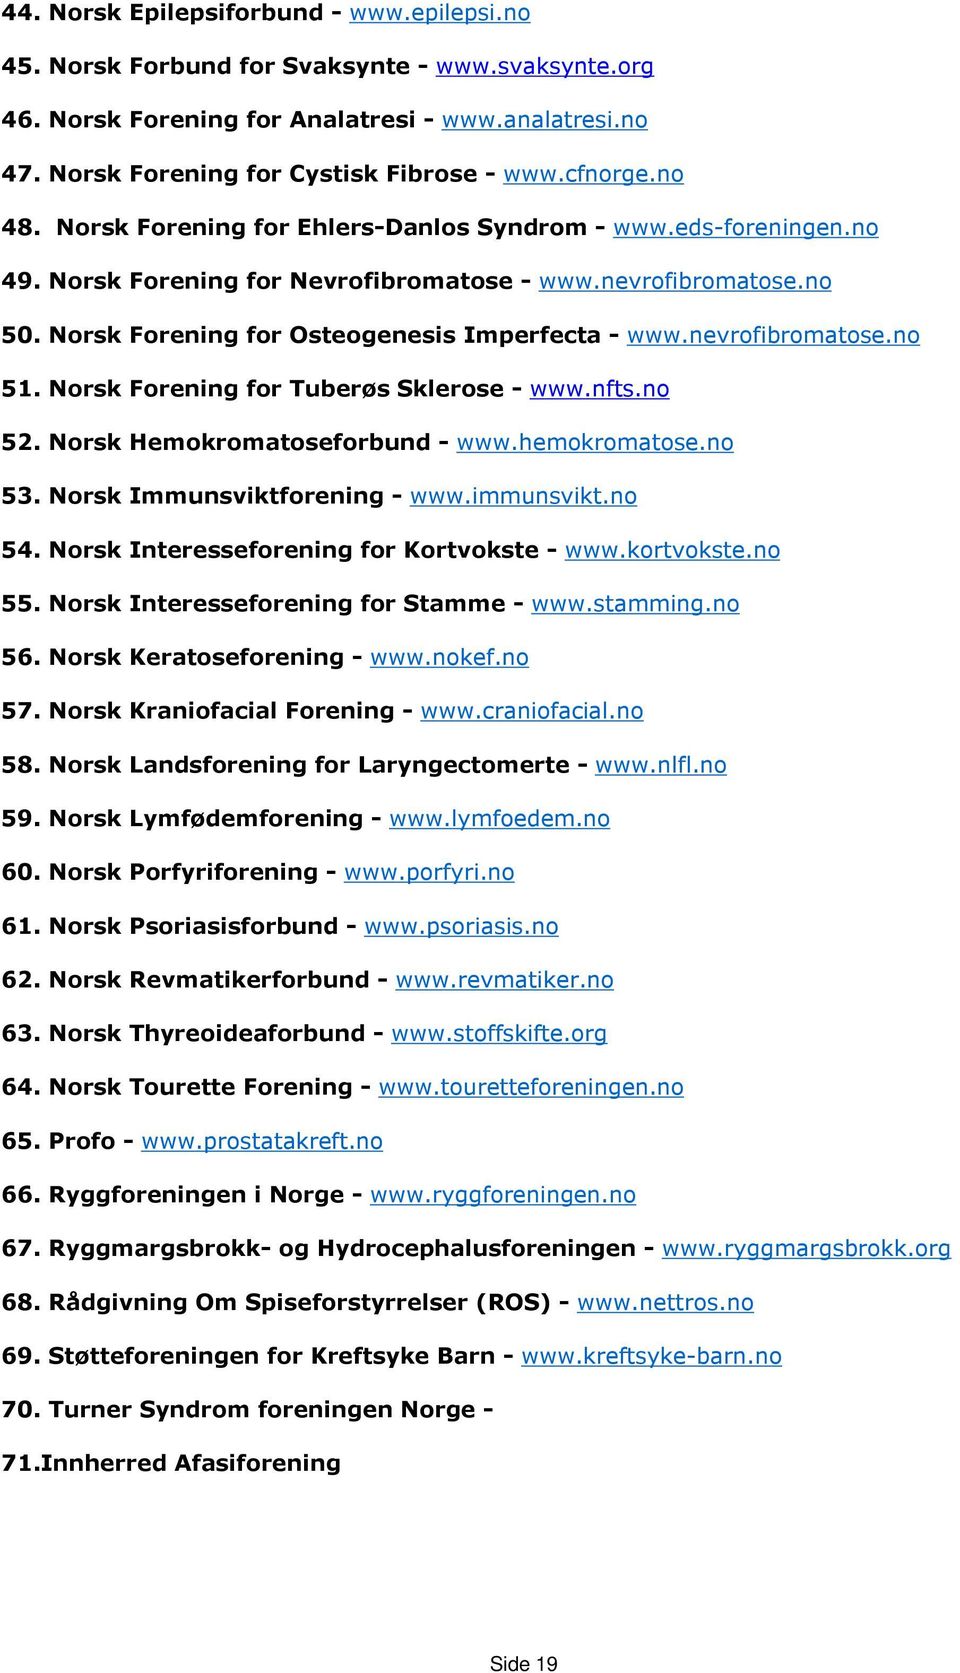 nevrofibromatose.no 51. Norsk Forening for Tuberøs Sklerose - www.nfts.no 52. Norsk Hemokromatoseforbund - www.hemokromatose.no 53. Norsk Immunsviktforening - www.immunsvikt.no 54.